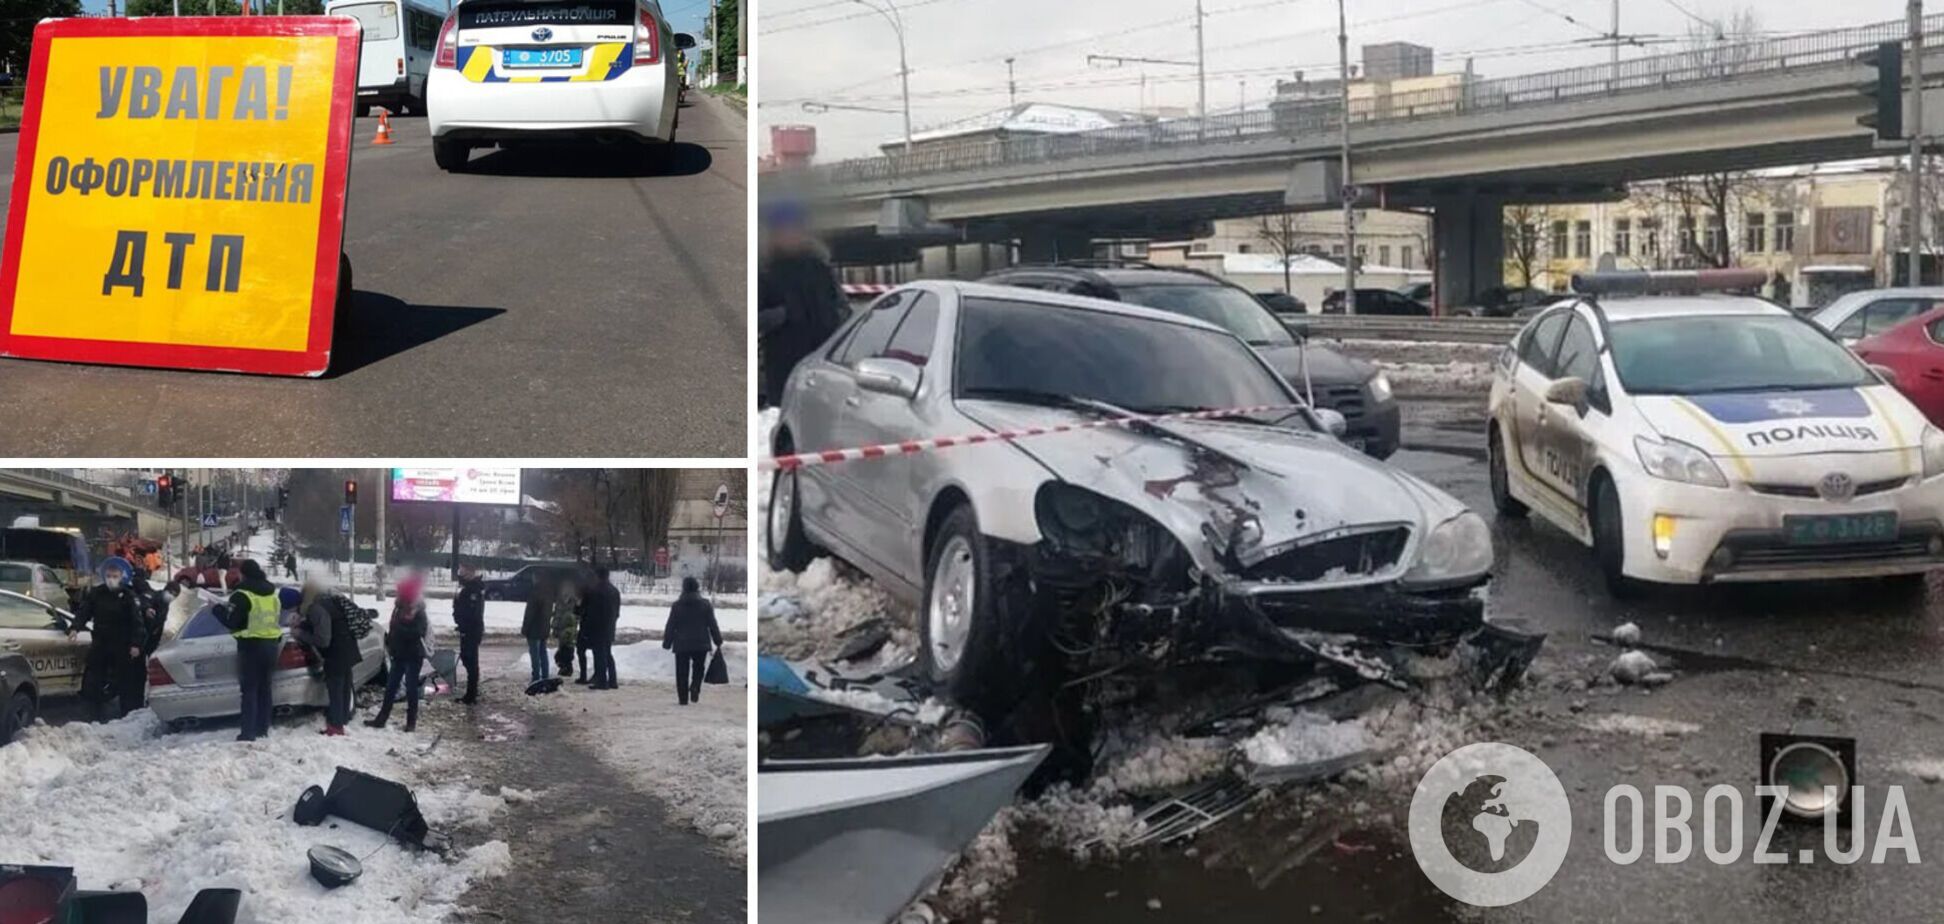 Украинцы продолжают нарушать правила на дорогах